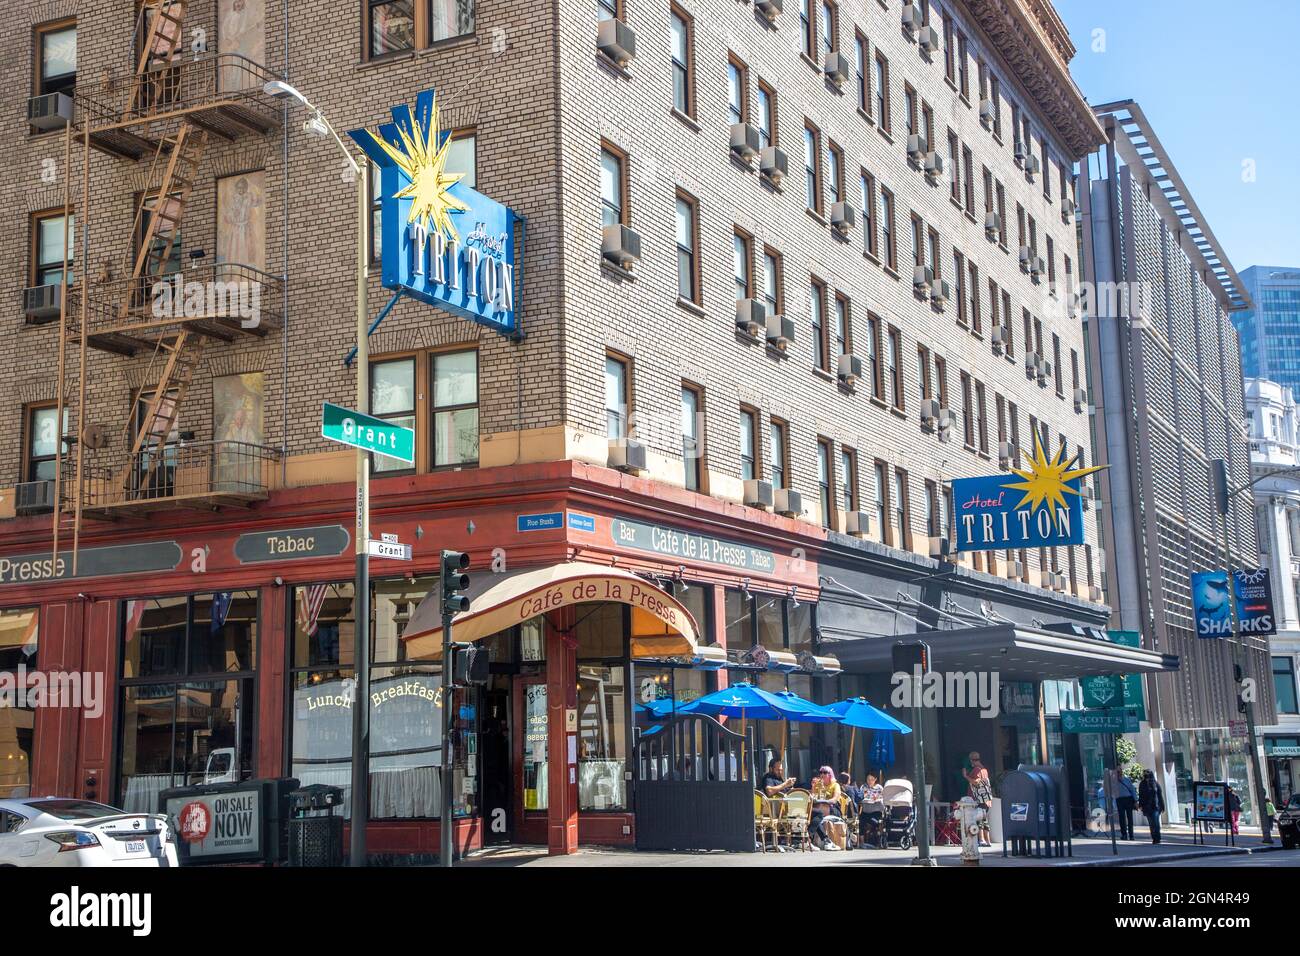 The Hotel Triton and Cafe de la Presse are on the corner of Bush and Grant in San Francisco, California. Stock Photo